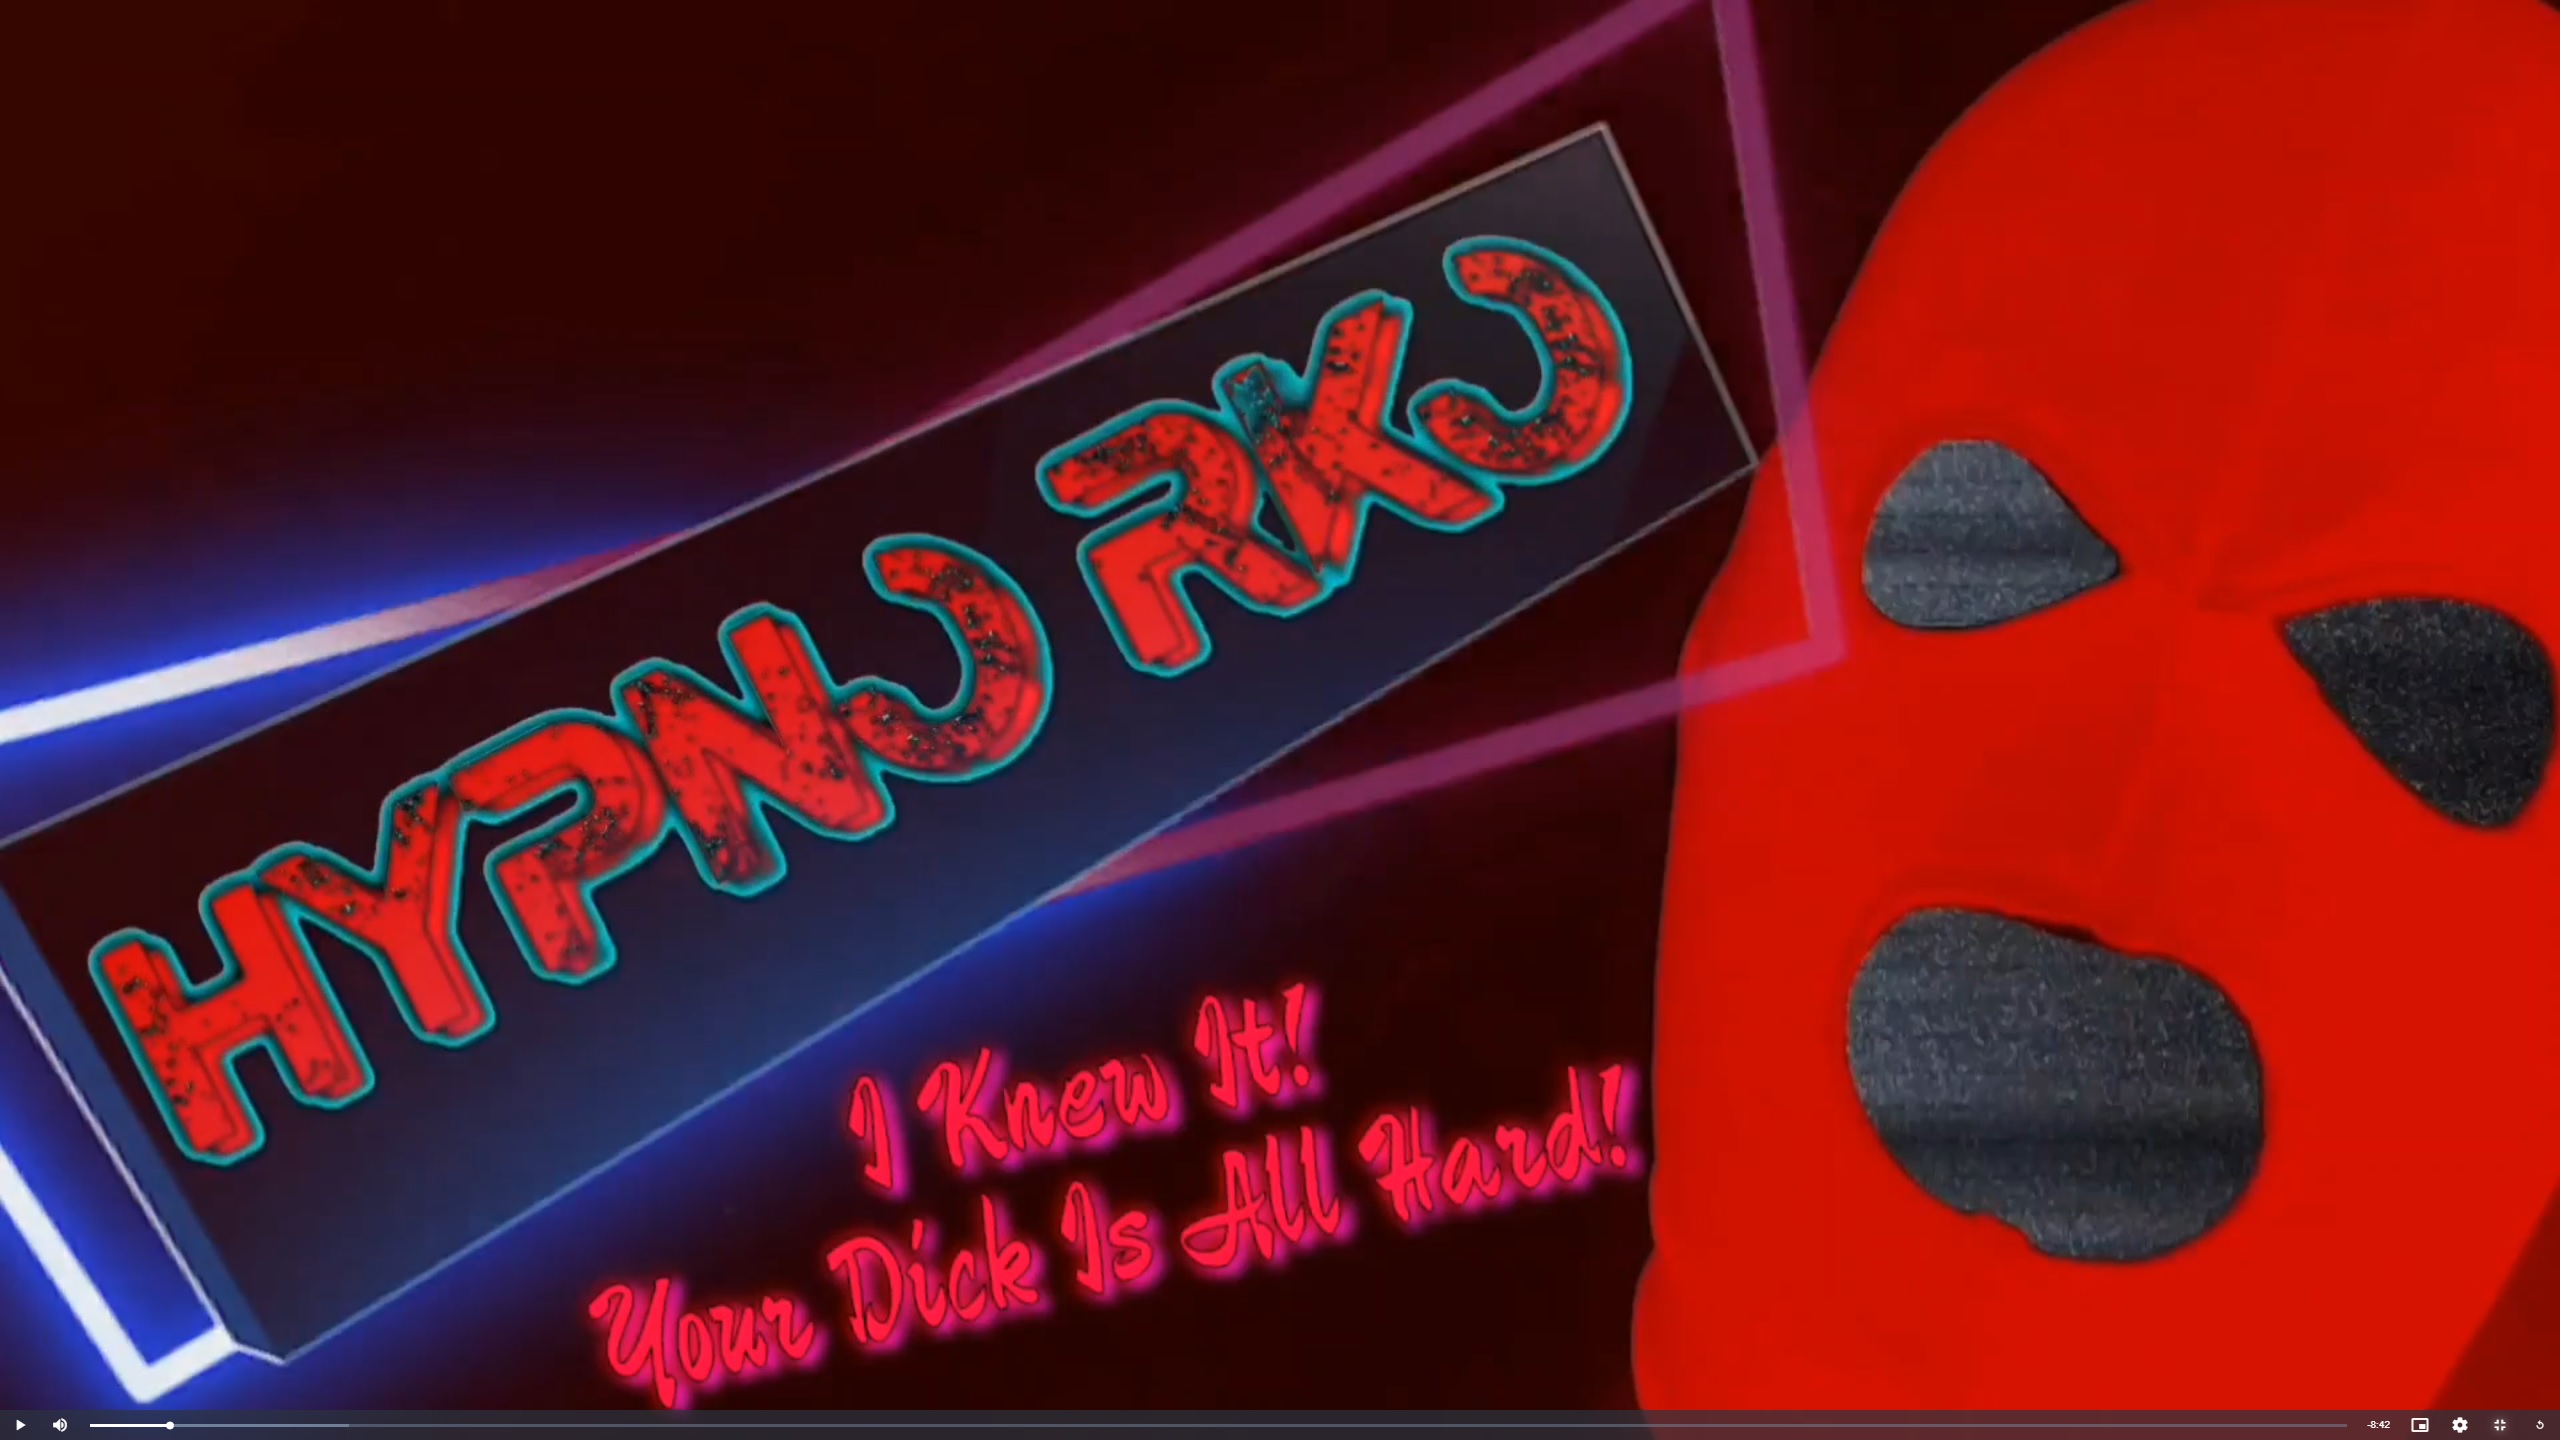 Hypno Rko - I Knew it Your Dick Is Still Hard